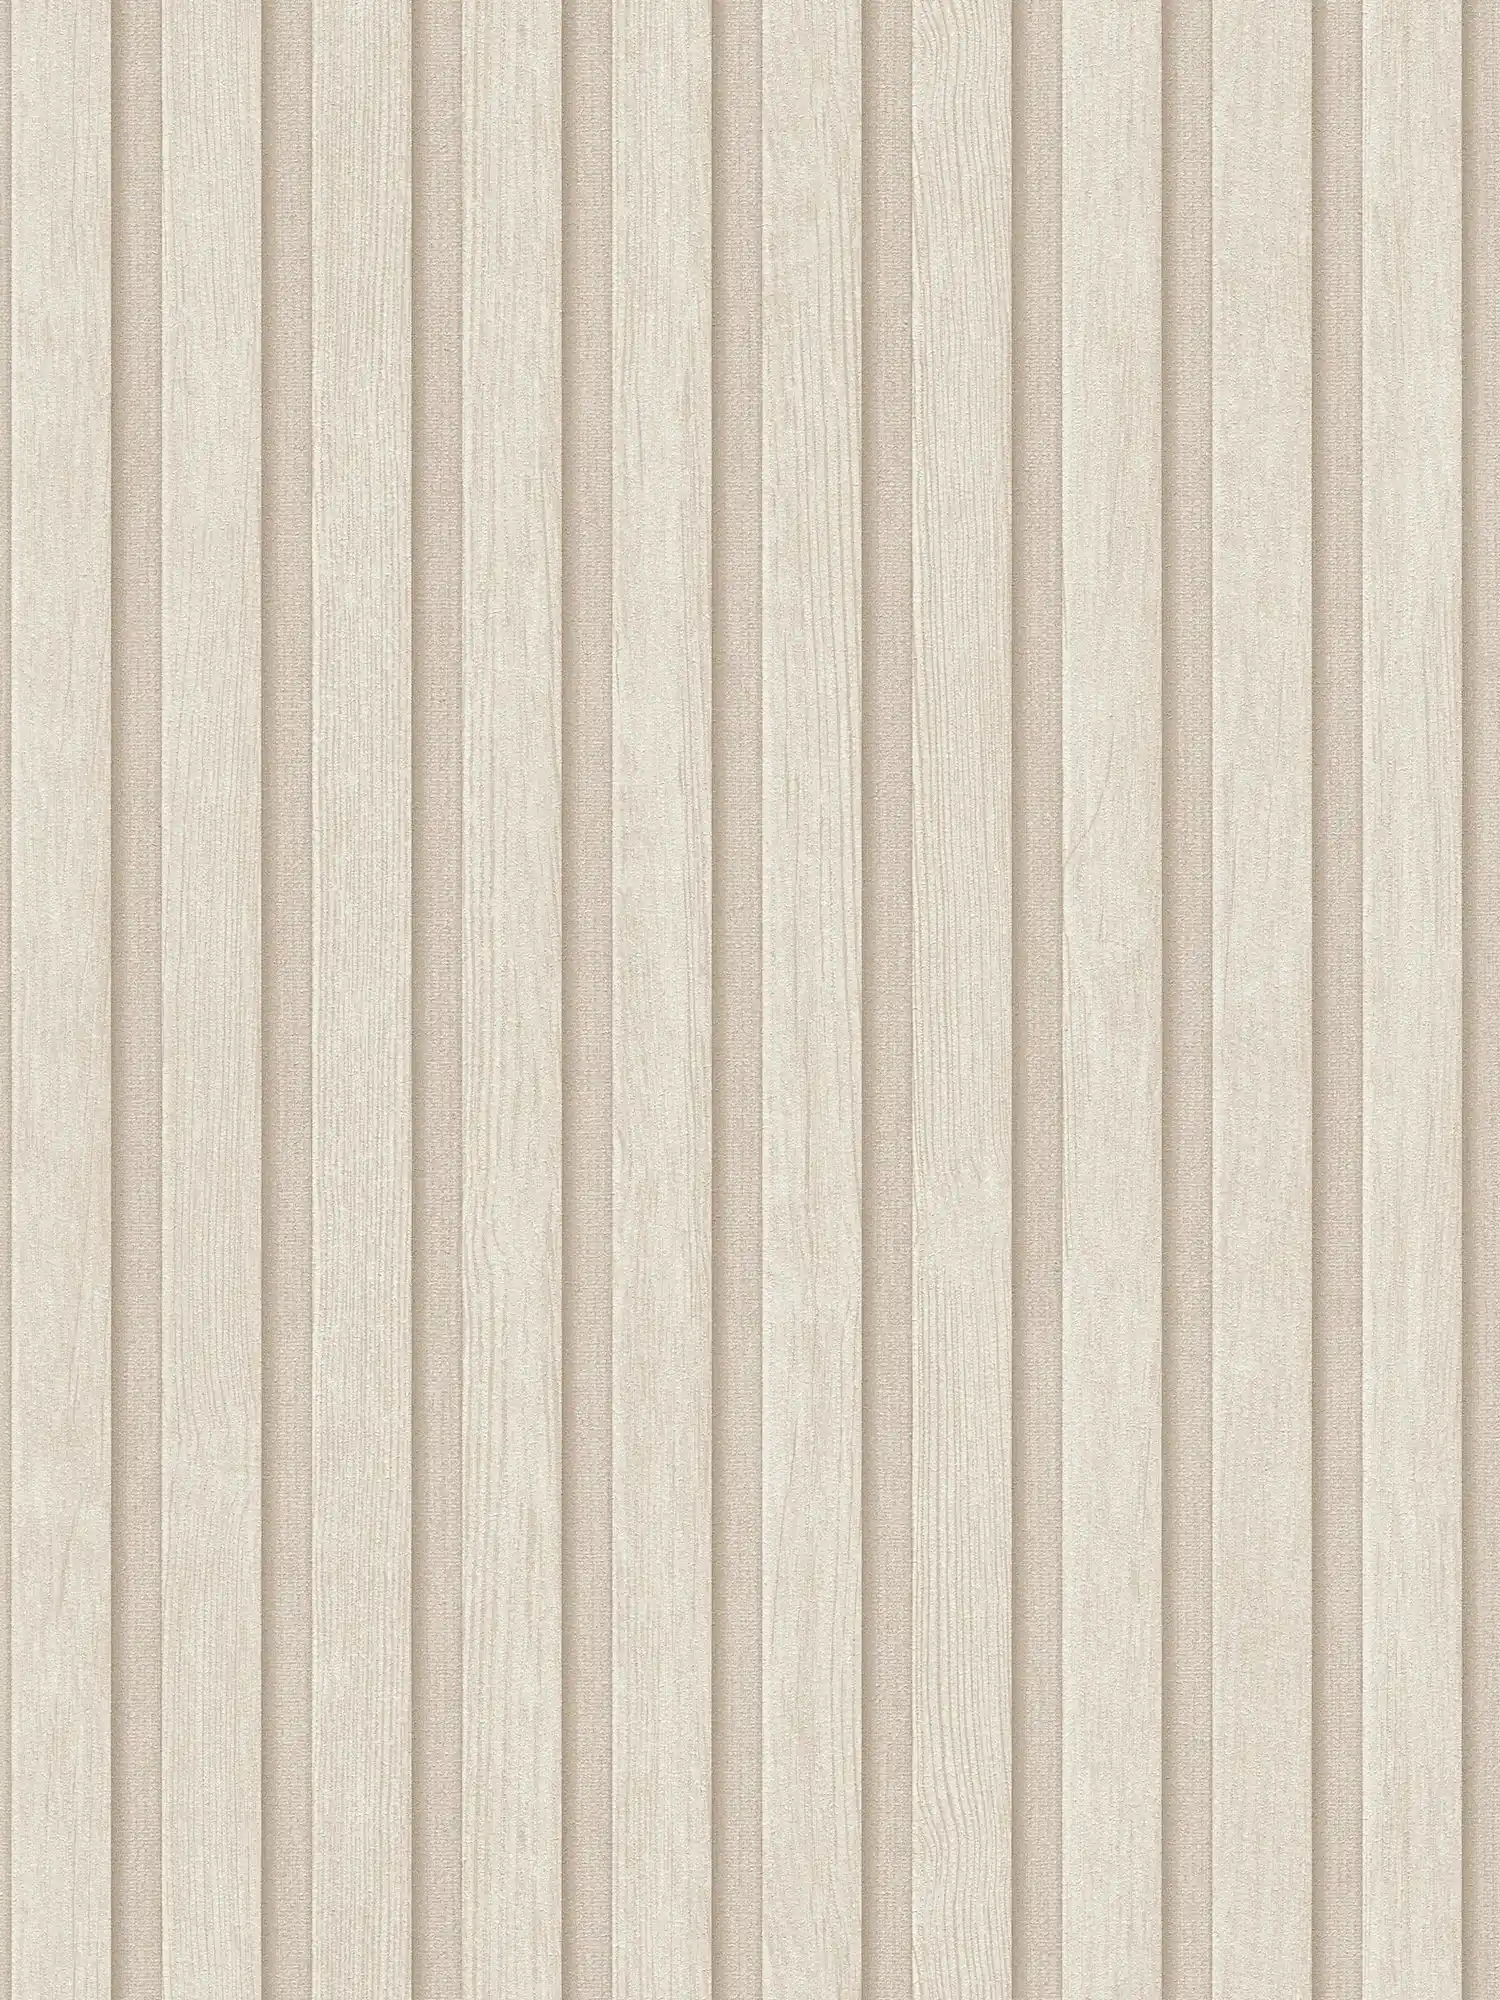 Carta da parati in tessuto non tessuto con pannello acustico effetto legno - crema, beige
